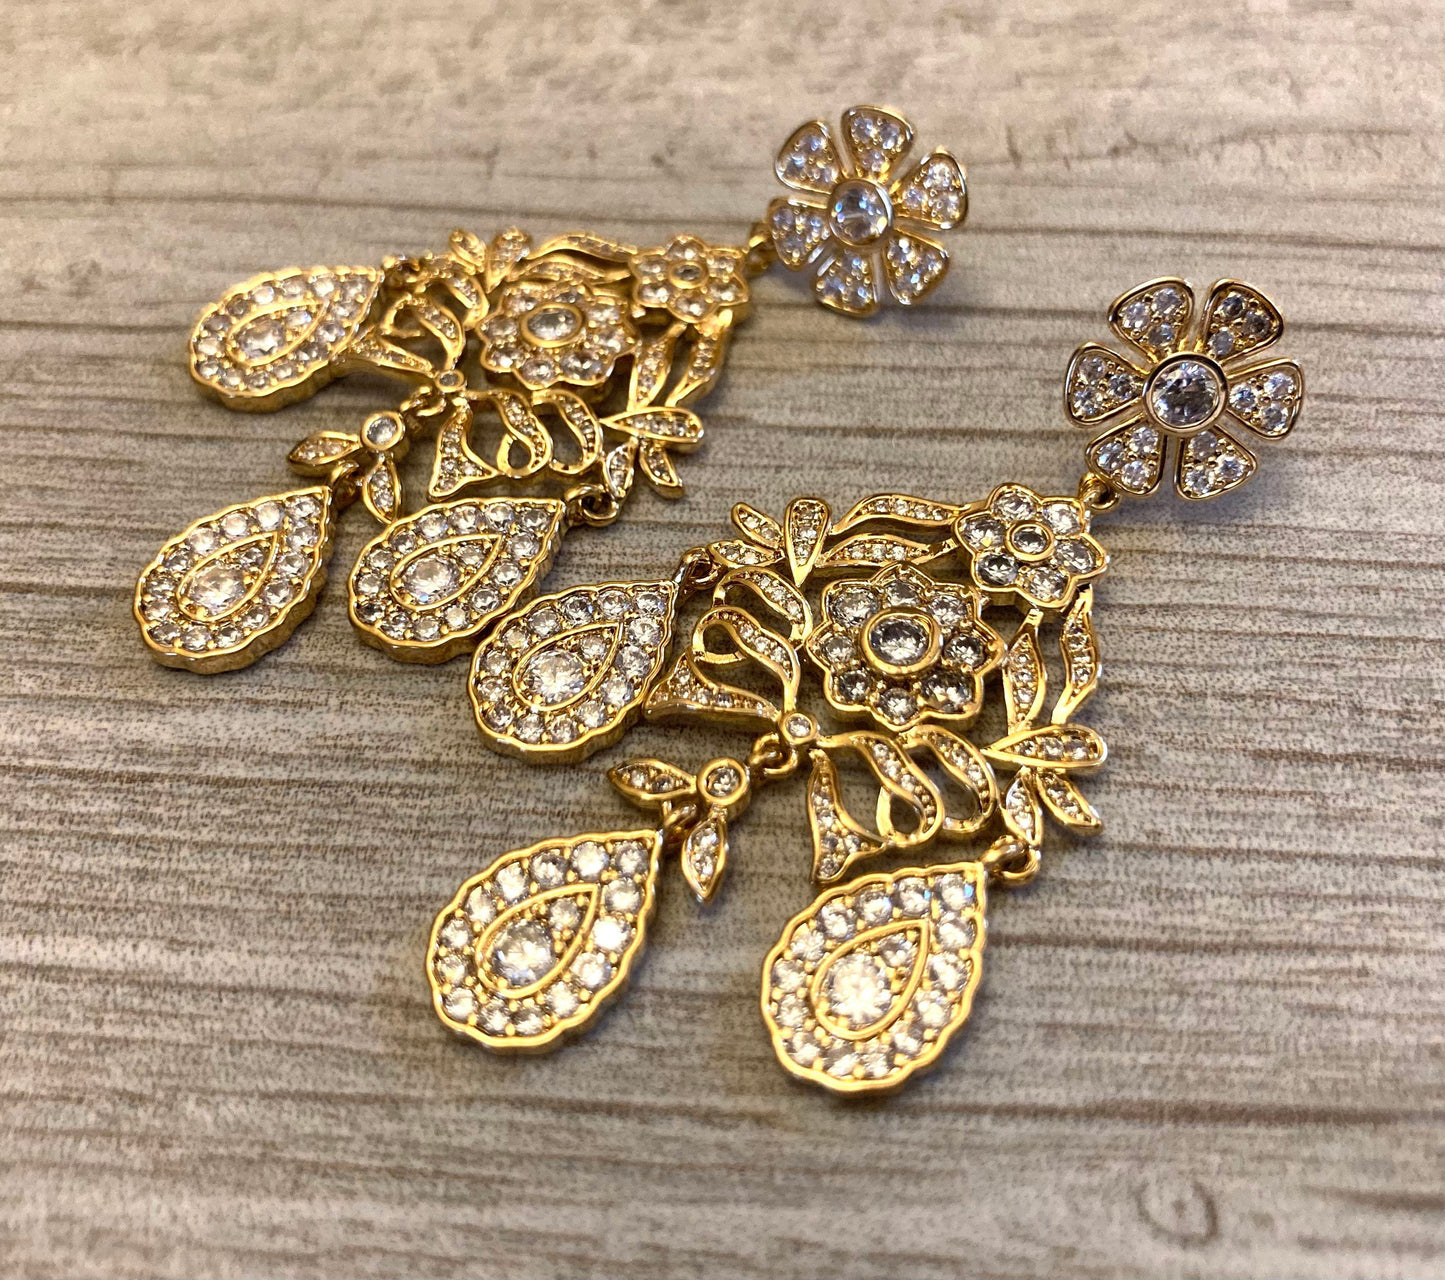 Girandole Earrings Rhinestone Chandelier Earrings in Gold or Silver historic jewelry replica earrings 18th century Georgian Victorian